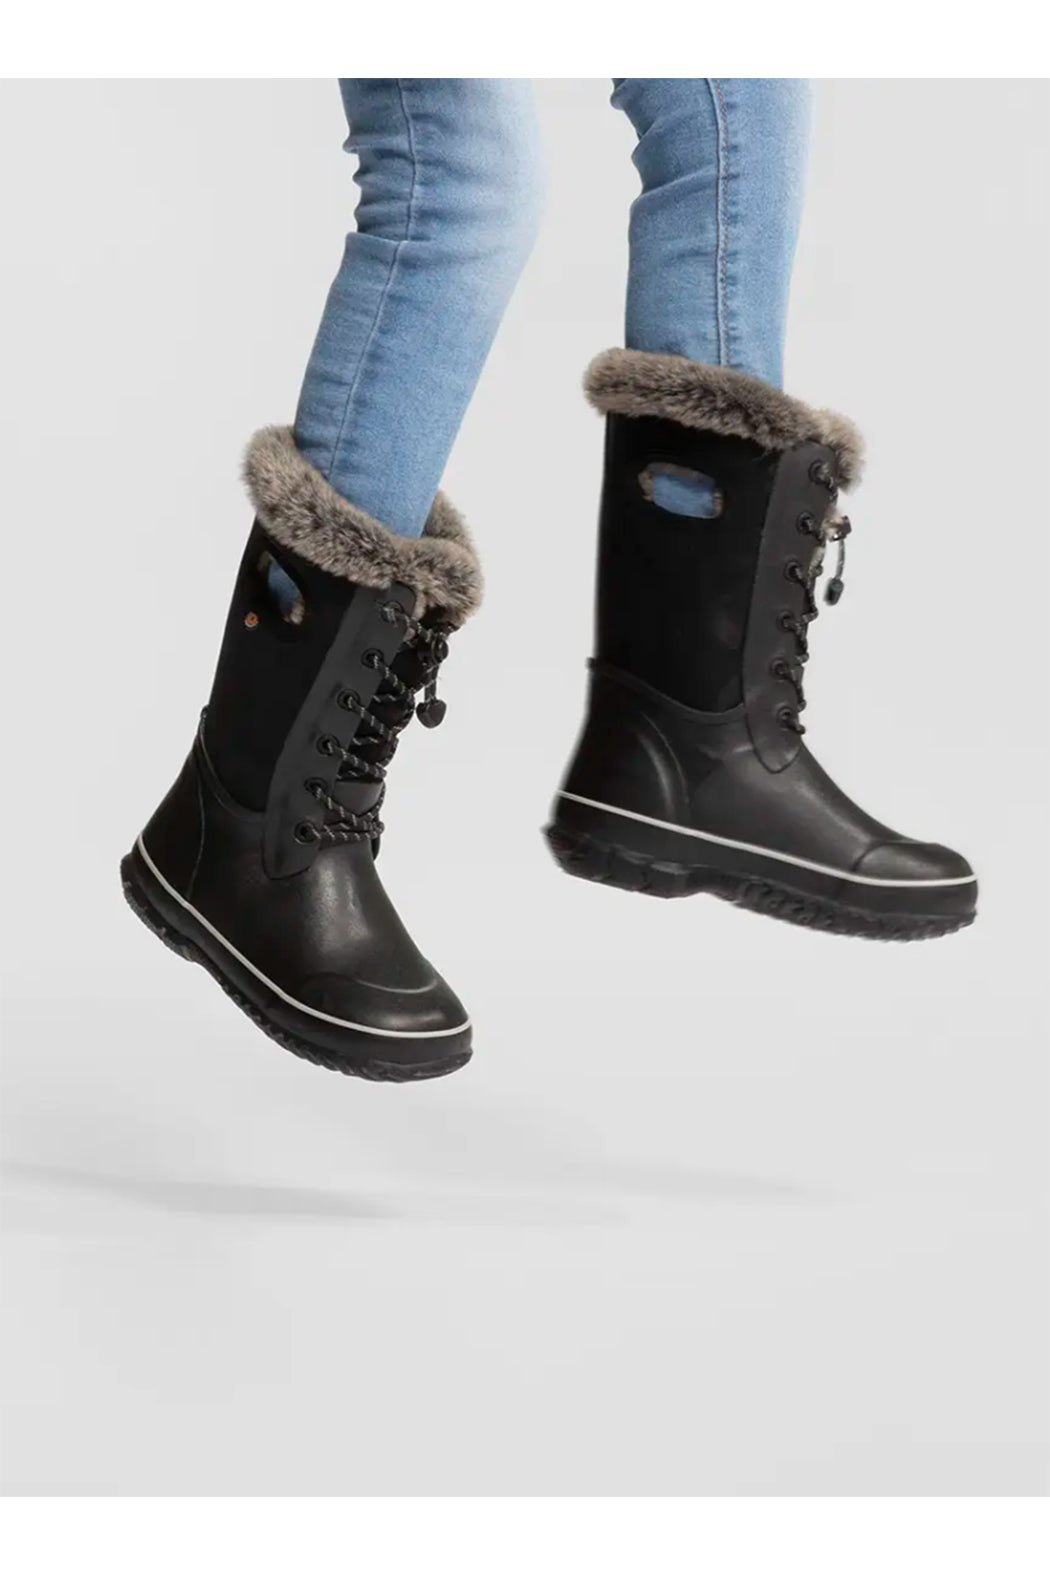 BOGS Arcata Winter Boots - Tonal Camo